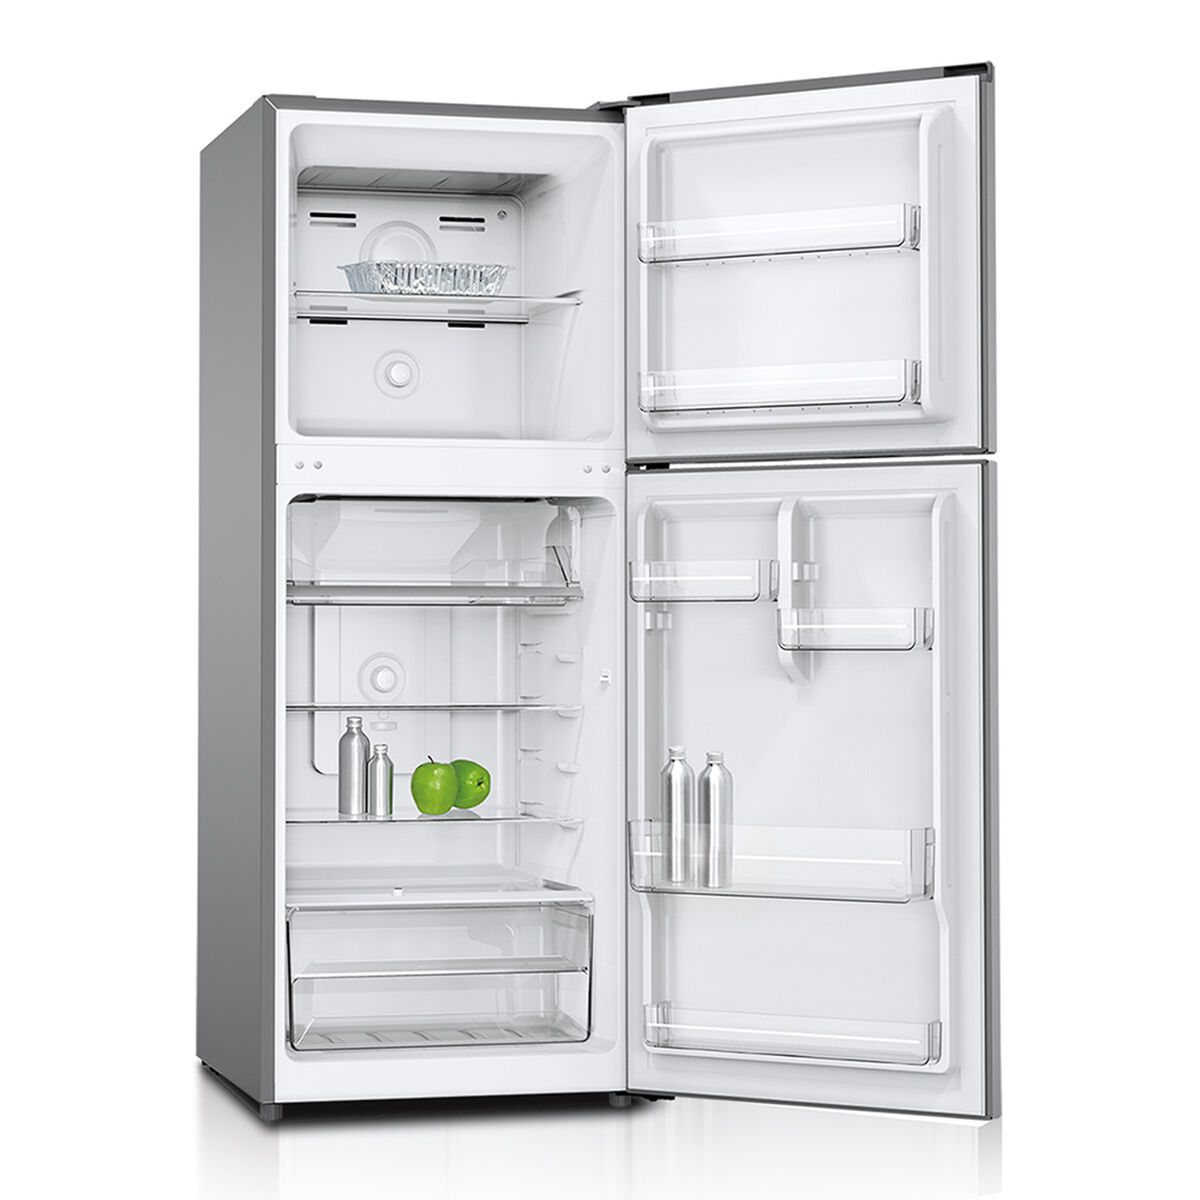 Refrigerador No Frost Oster OS BNF2700 HV 192 lt